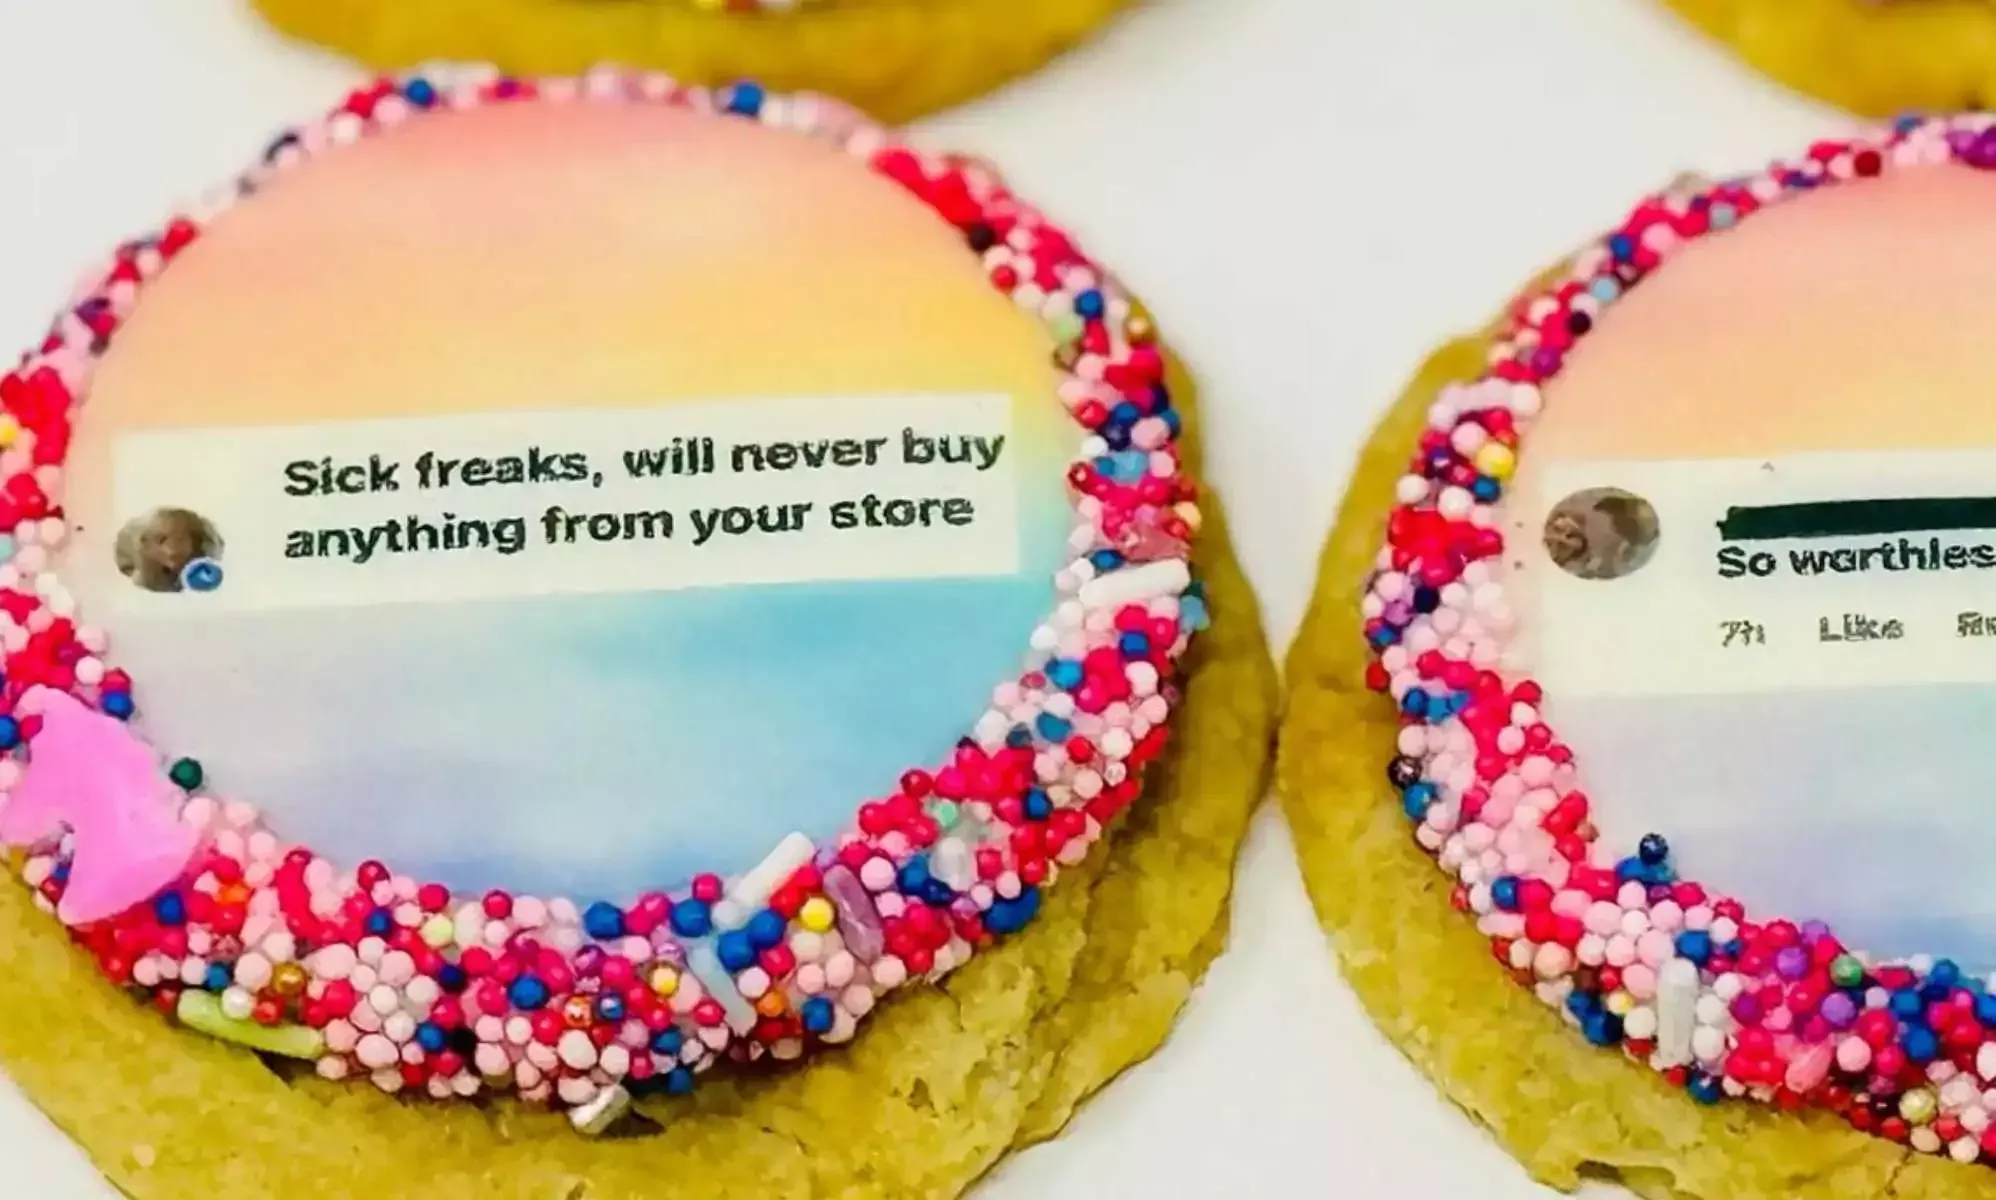 Una panadería convierte mensajes homófobos en 